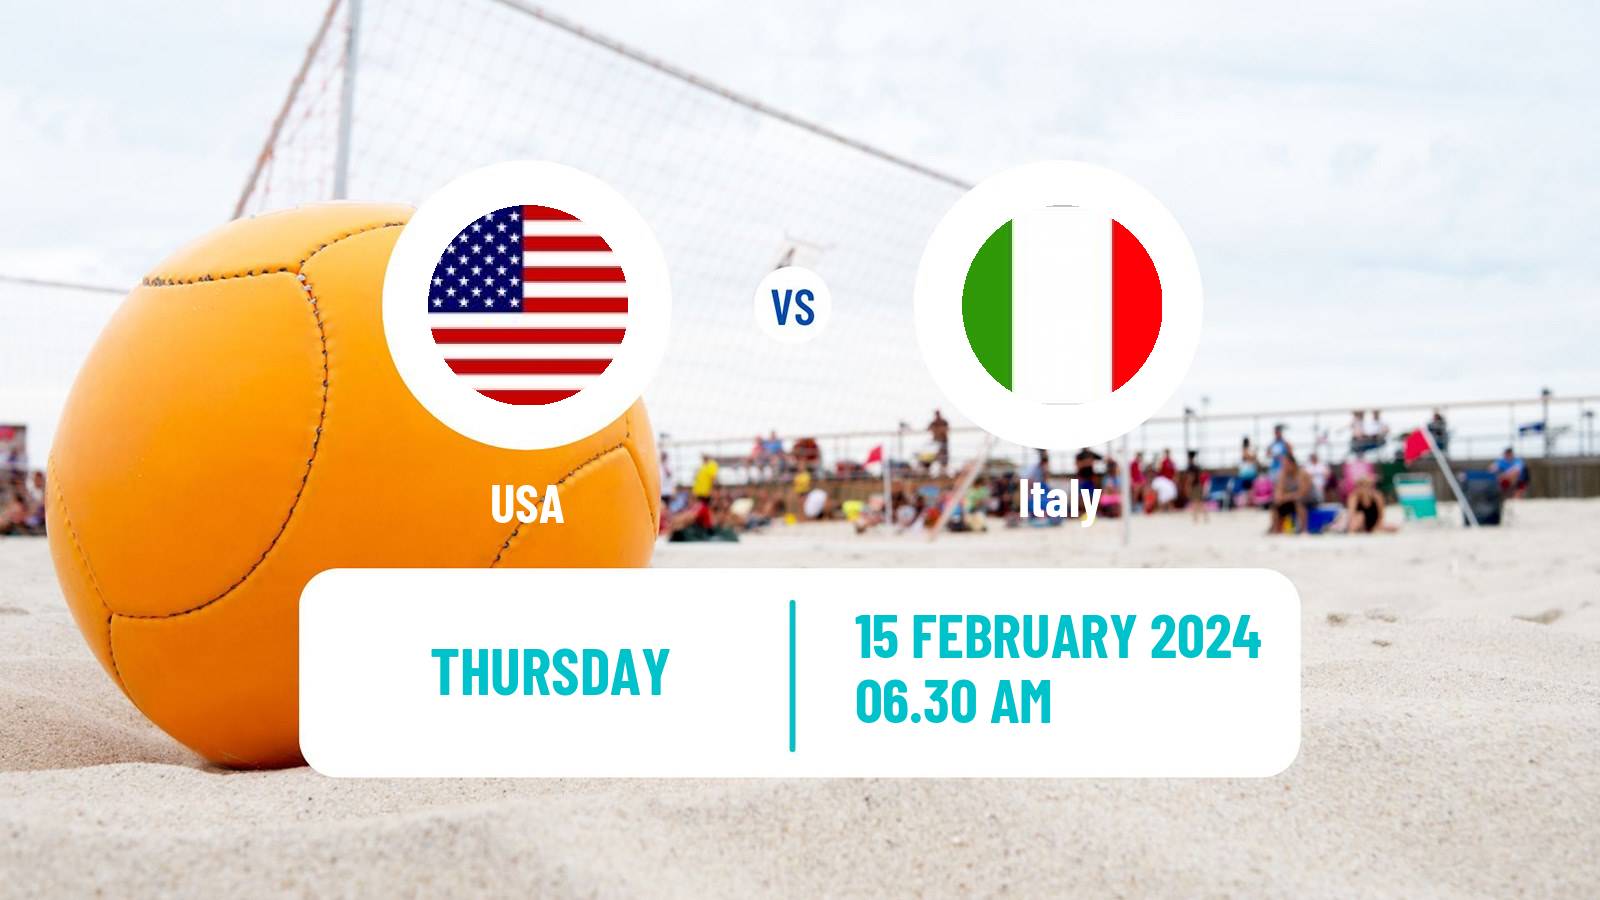 Beach soccer World Cup USA - Italy